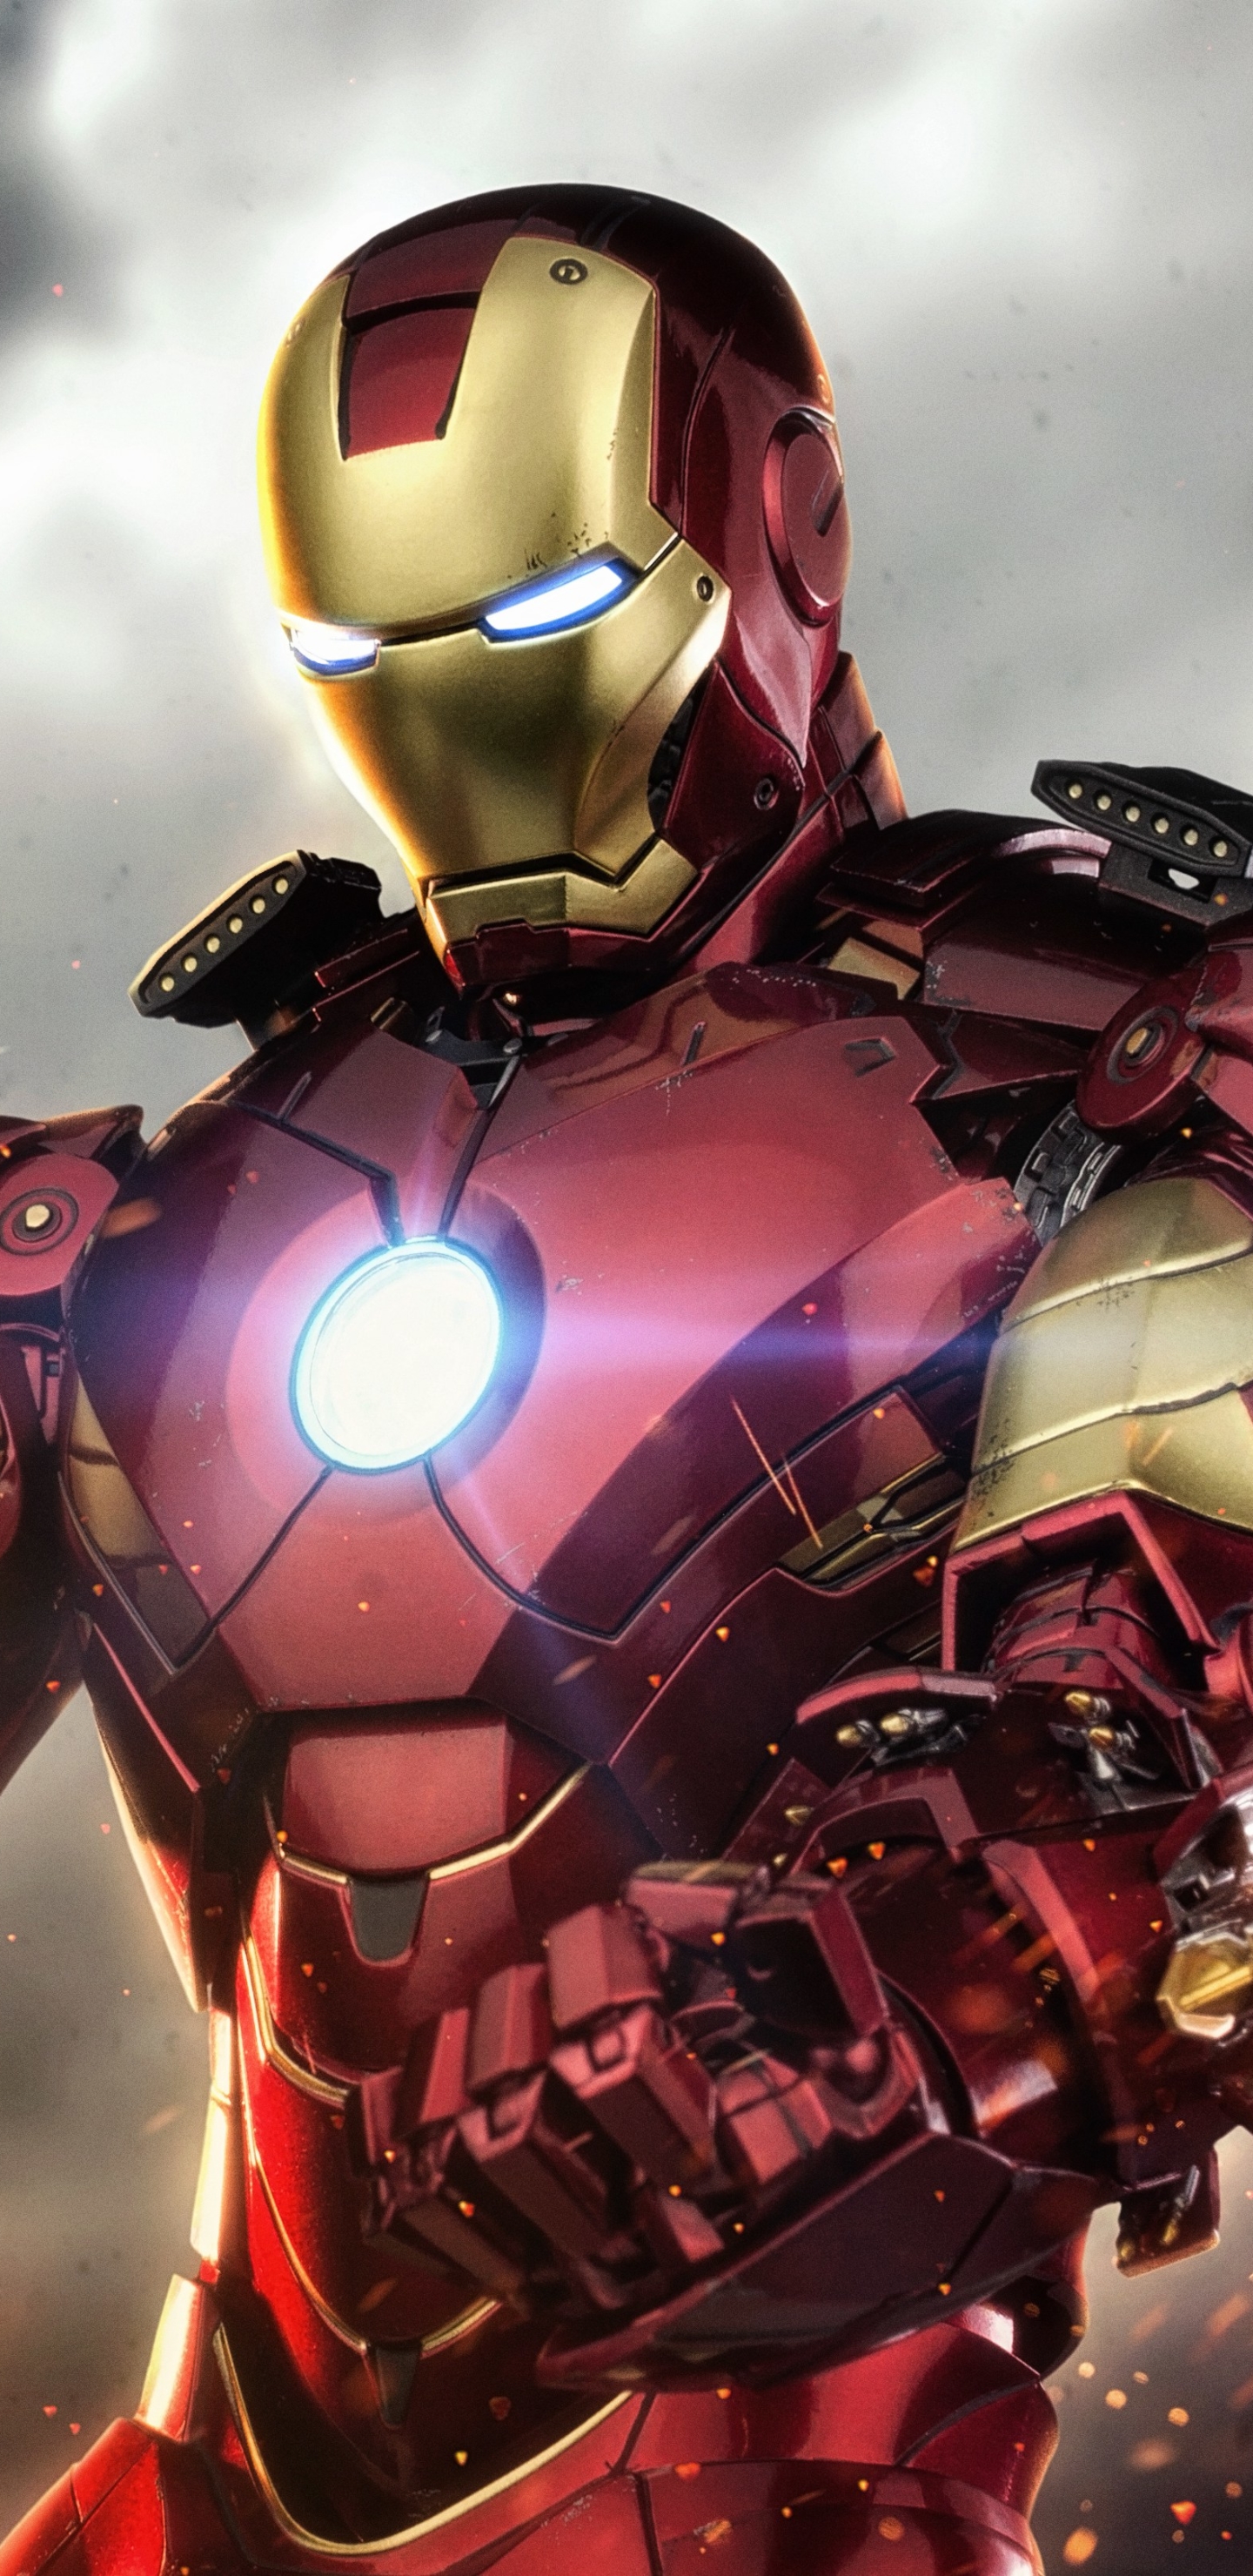 Descarga gratuita de fondo de pantalla para móvil de Iron Man, Películas.